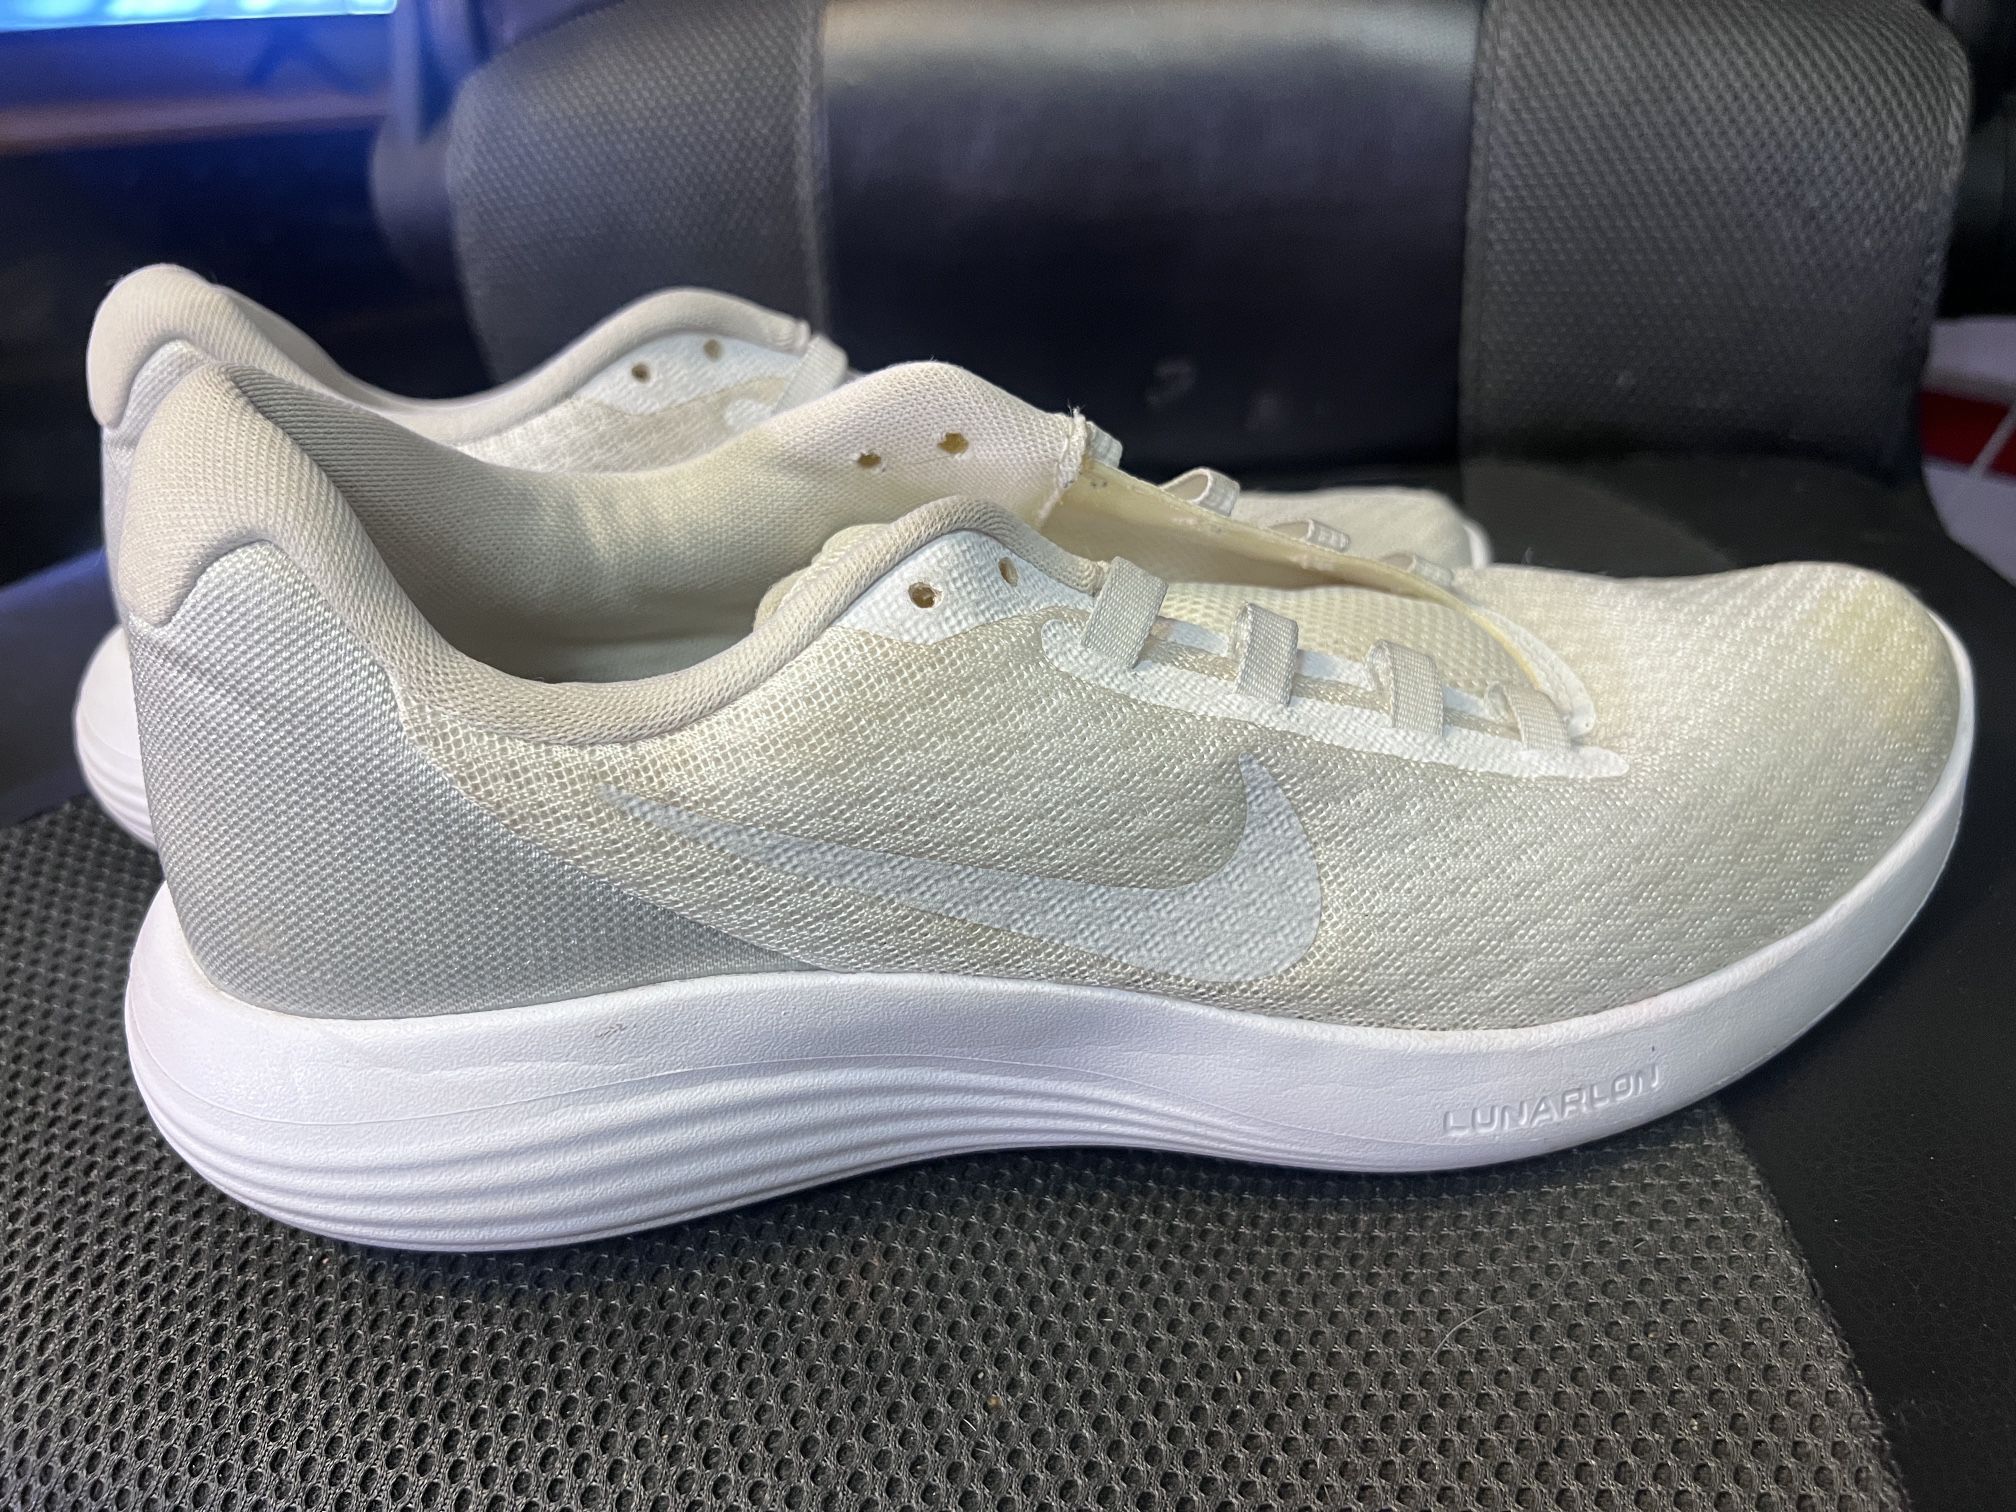 Nike Lunar Running Shoes Woman Size 8.5 